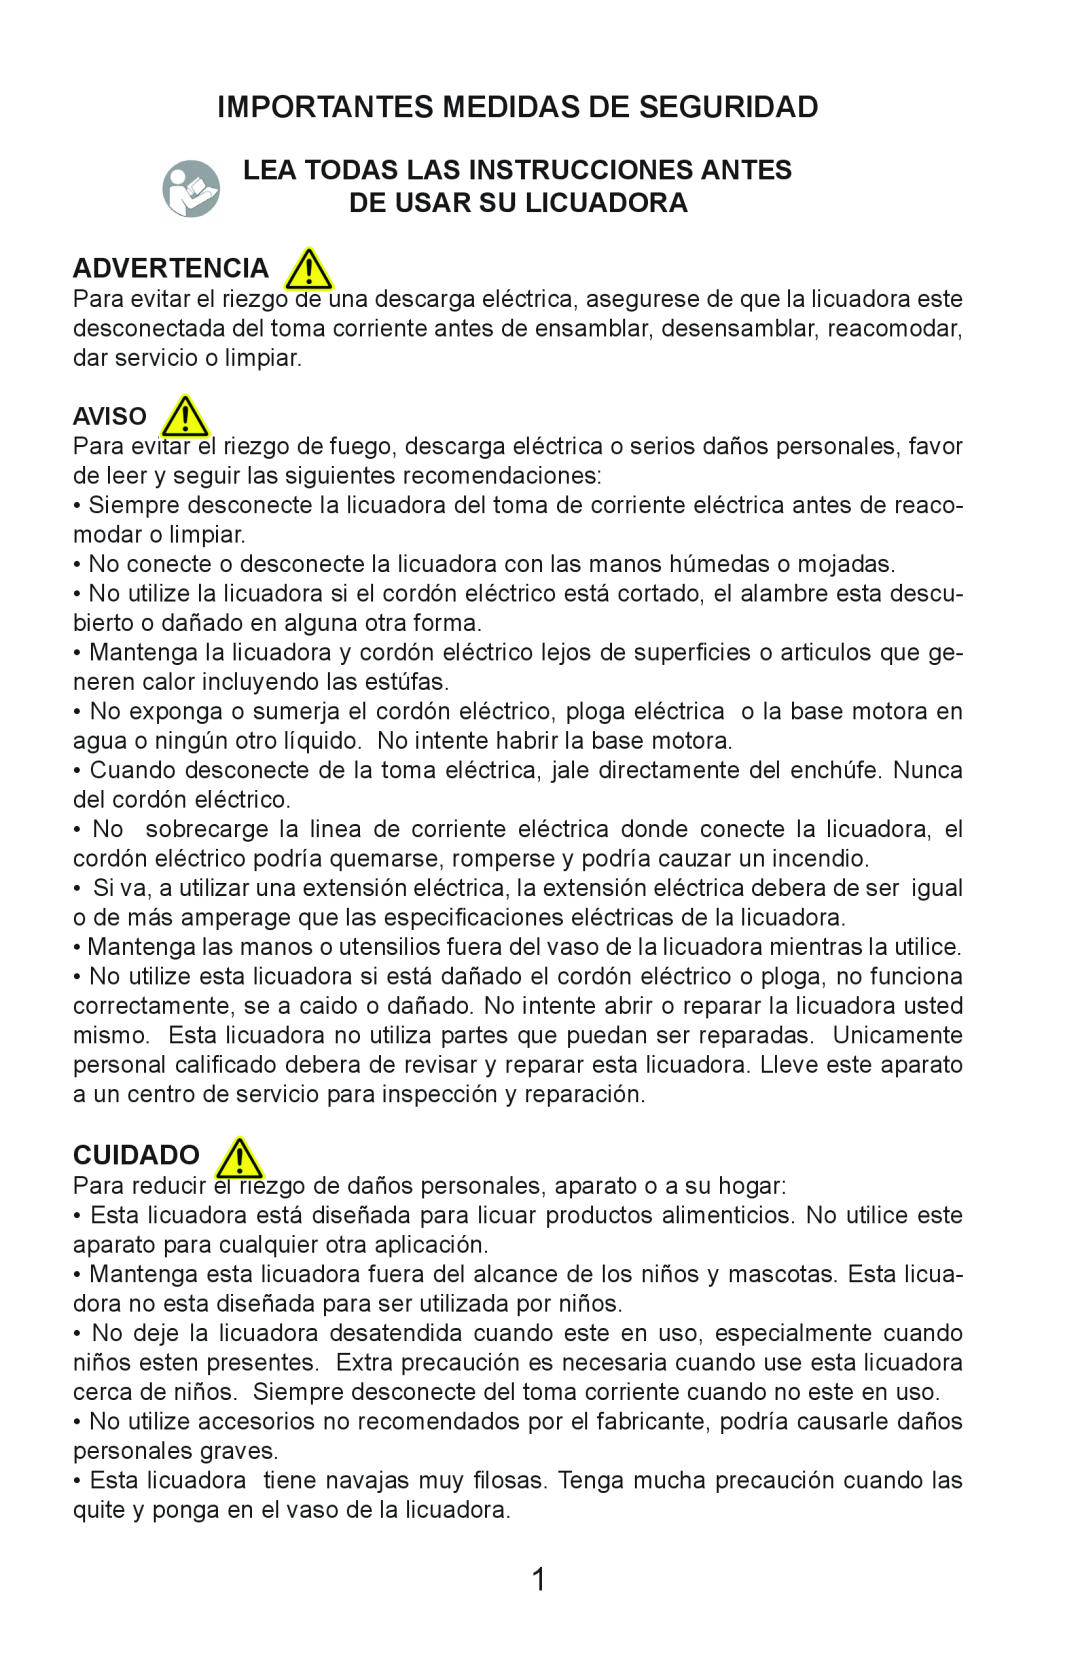 Continental Electric CE22131 Importantes Medidas De Seguridad, Lea Todas Las Instrucciones Antes, Cuidado, Aviso 